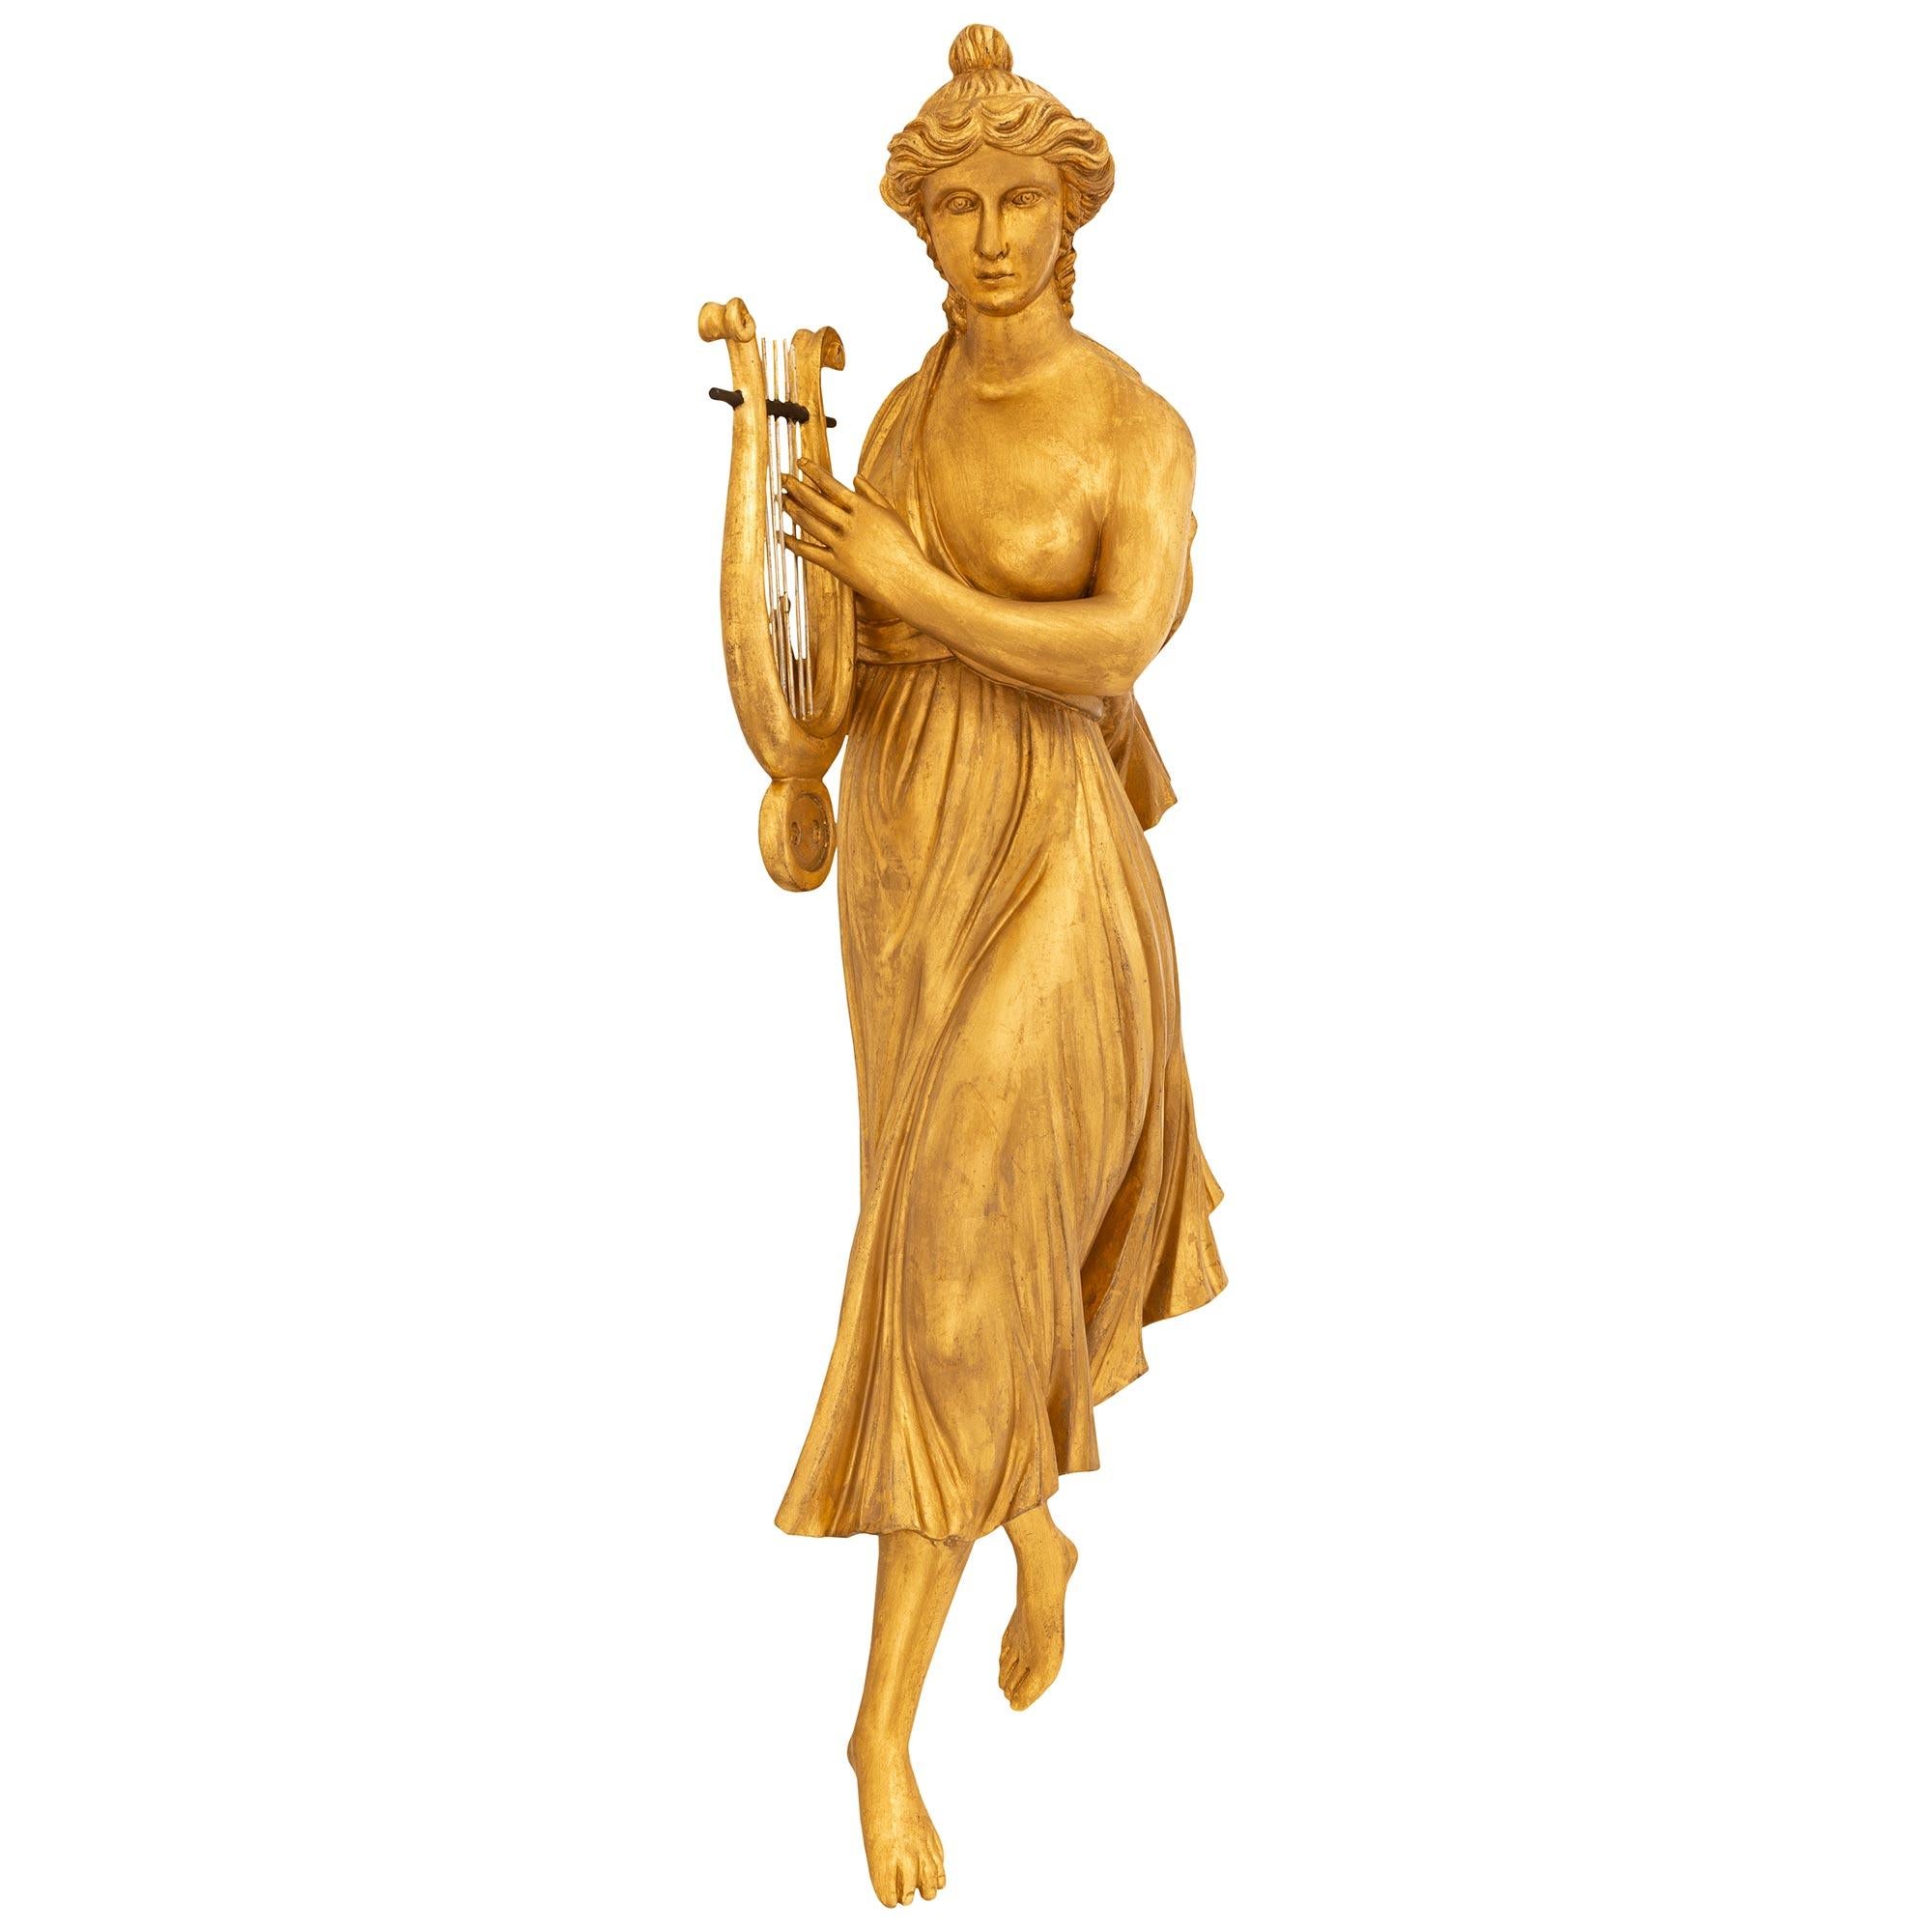 Paire de décorations murales en bois doré de style Louis XVI du XIXe siècle. Chacune des jeunes filles richement sculptées porte une tenue classique, les cheveux relevés, et tient son instrument de musique à deux mains. La jeune fille de gauche